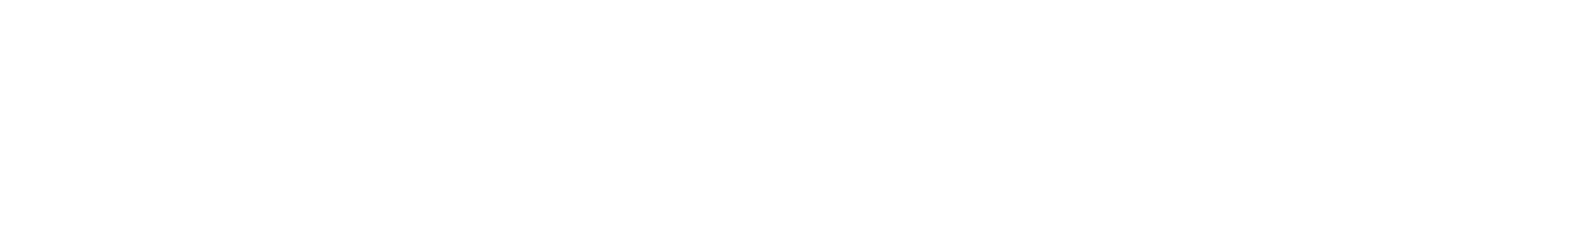 Banorte logo large for dark backgrounds (transparent PNG)